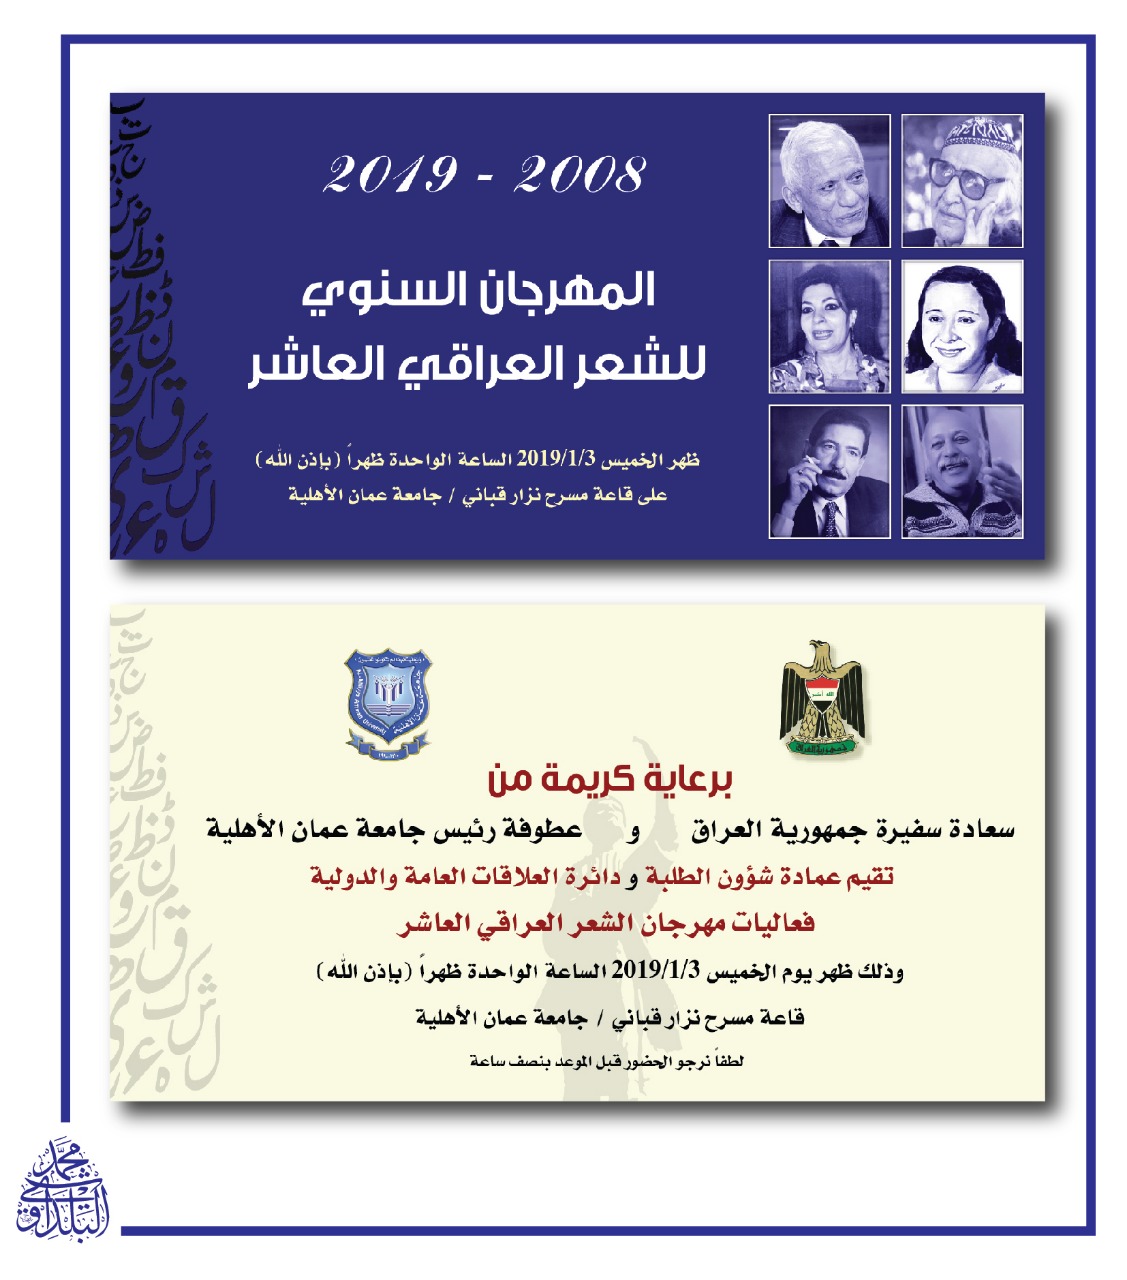 المهرجان السنوي العاشر للشعر العراقي في عمان الاهلية  الخميس المقبل